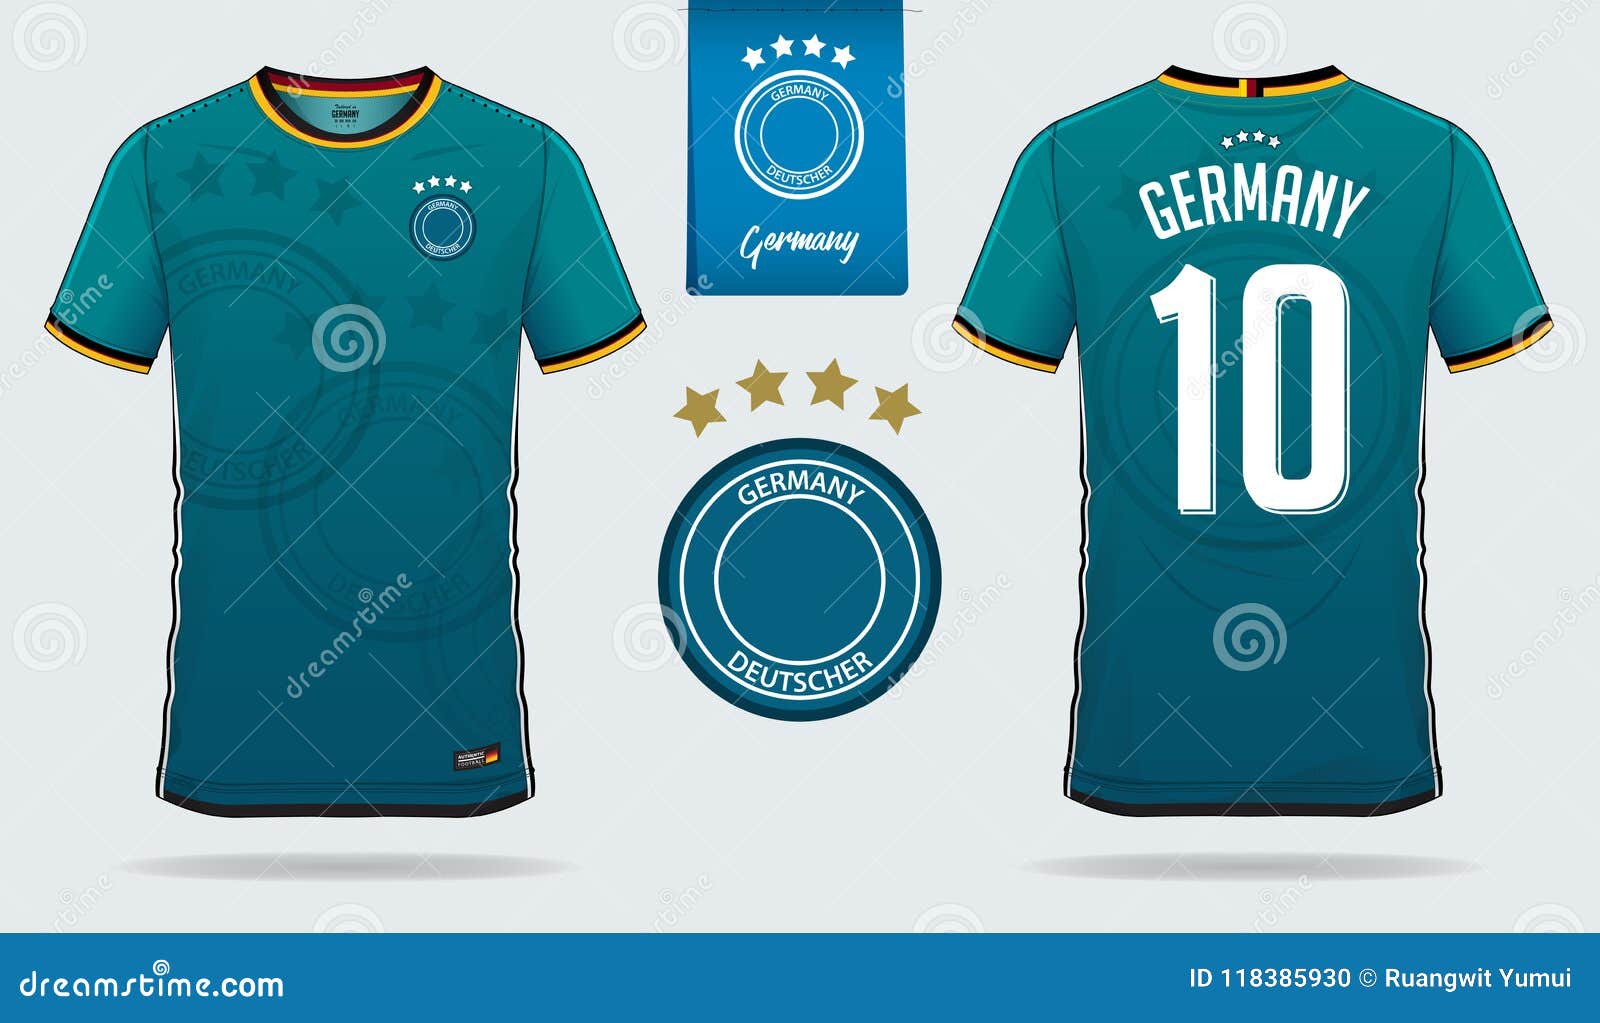 germany national soccer jersey